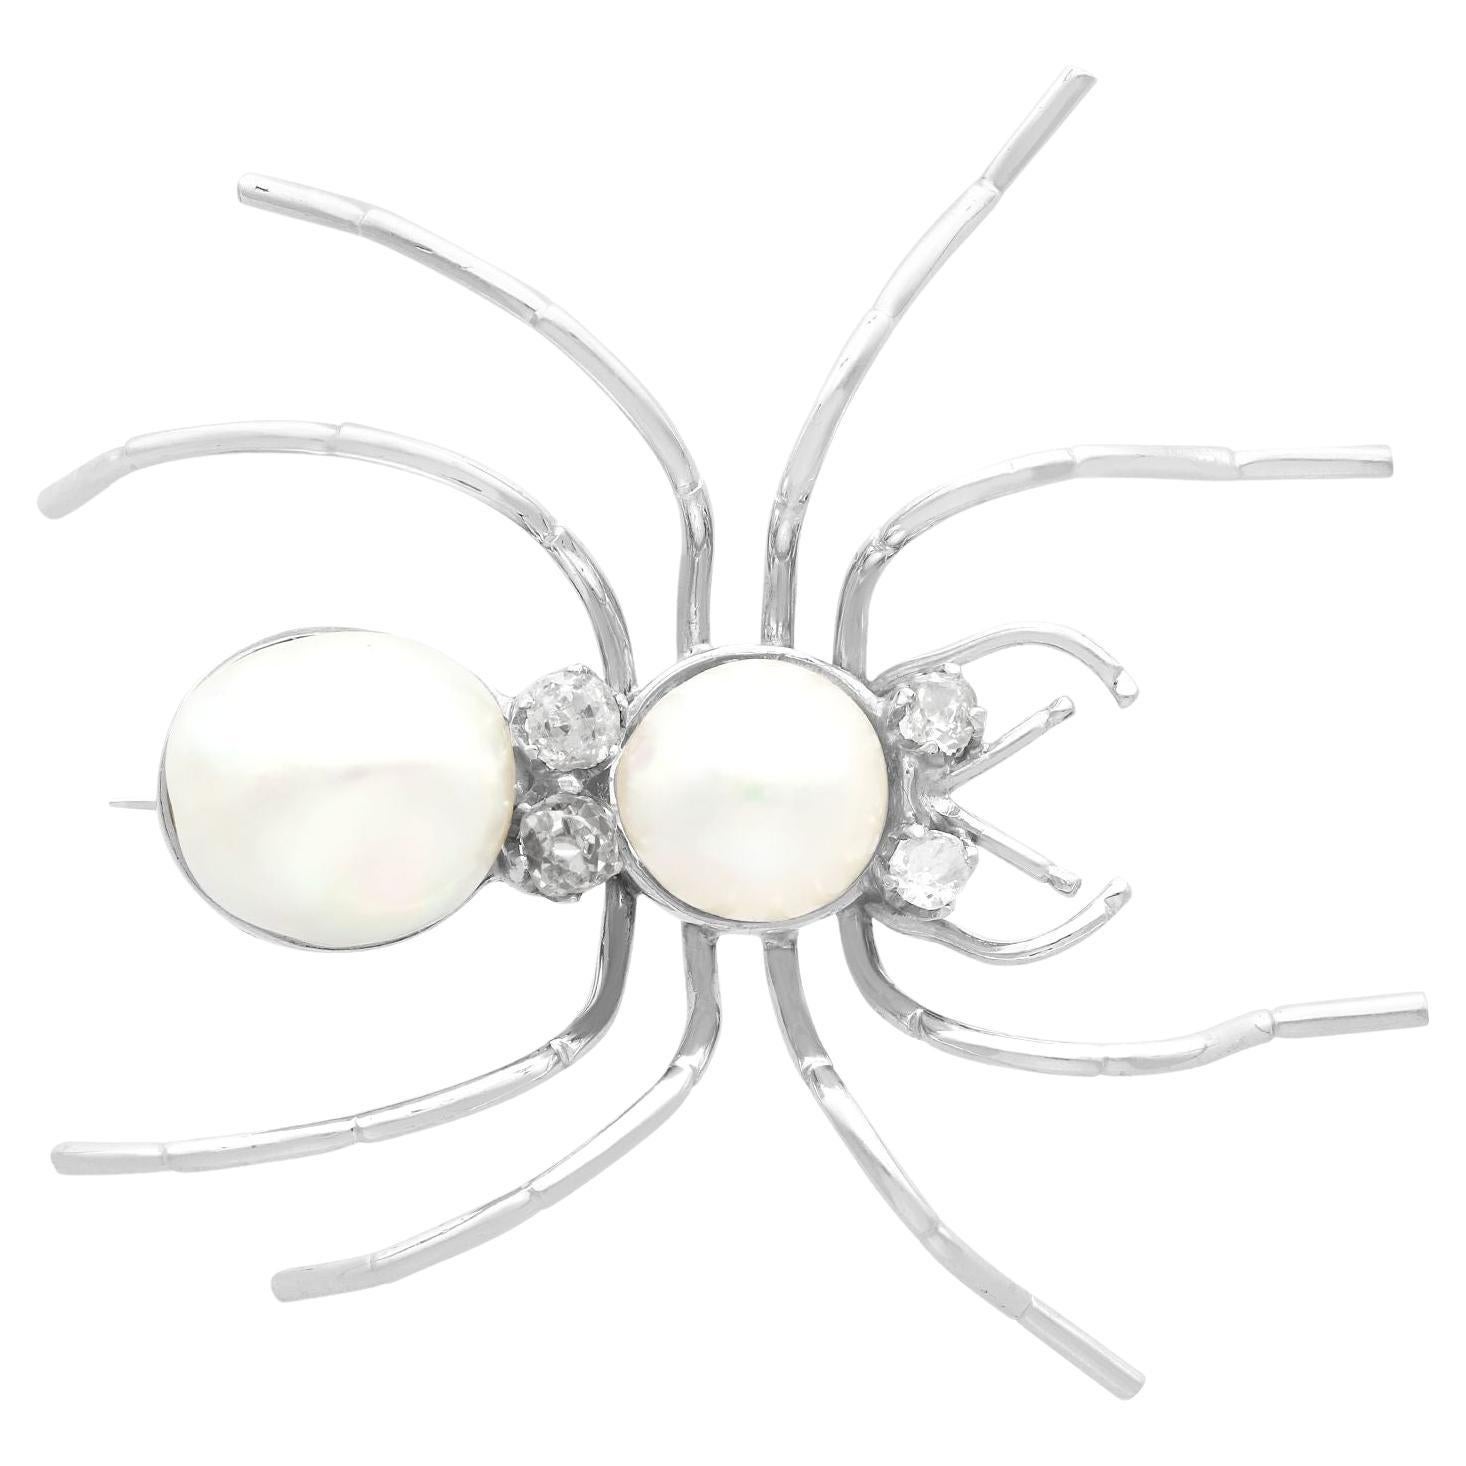 Broche araignée ancienne en or blanc, perles de culture et diamants, c. 1935